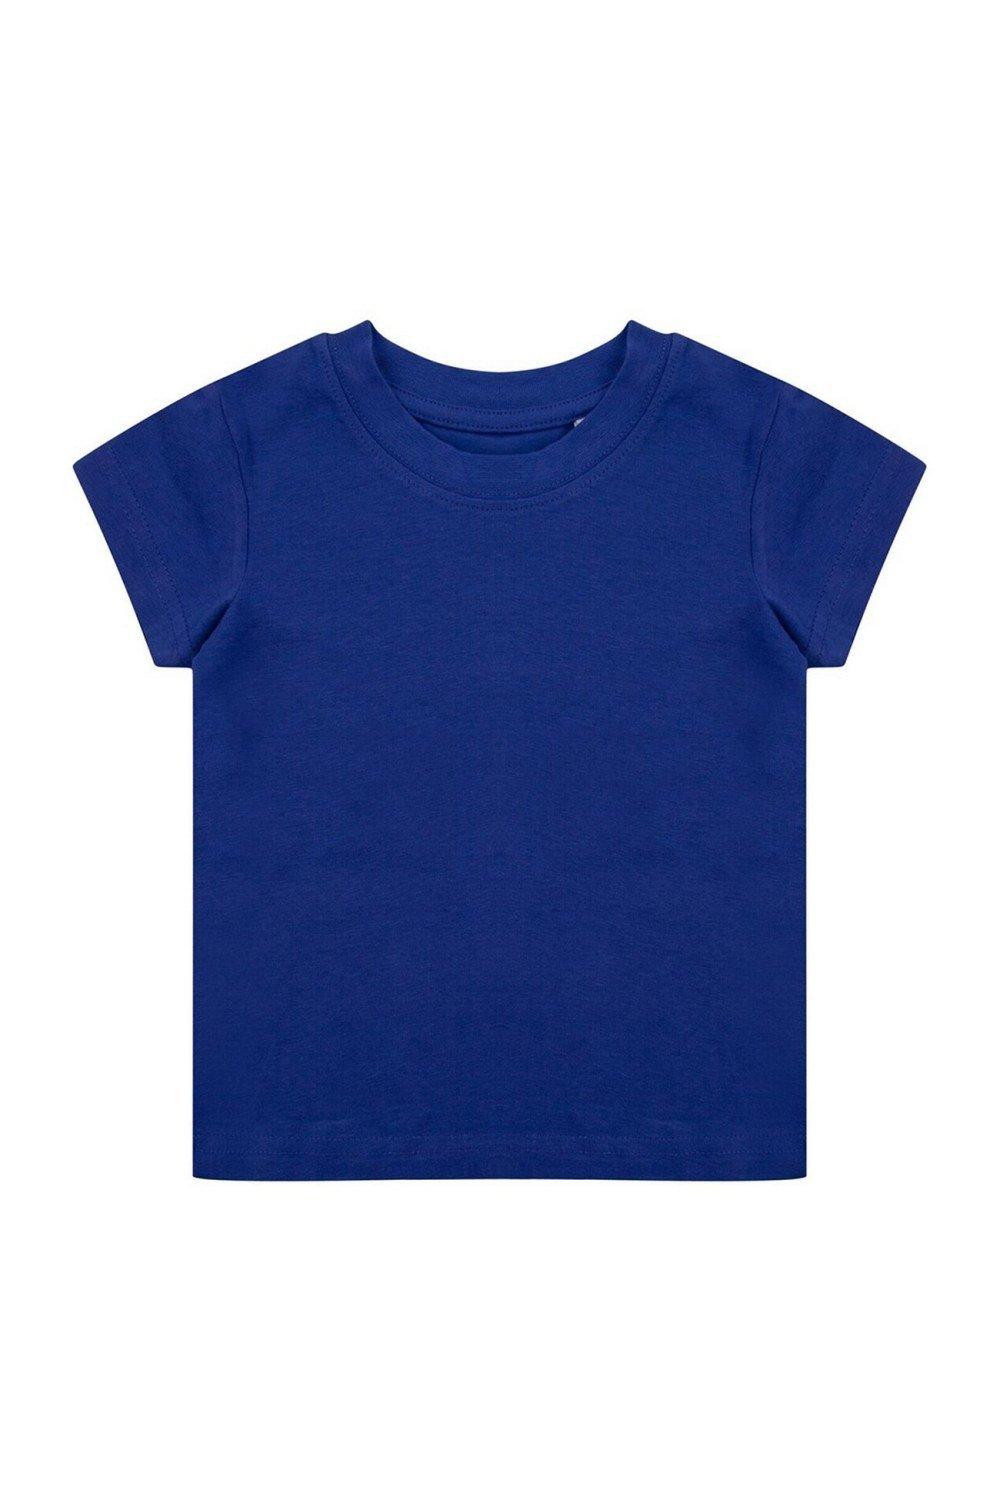 Органическая футболка Larkwood, синий органическая футболка larkwood синий